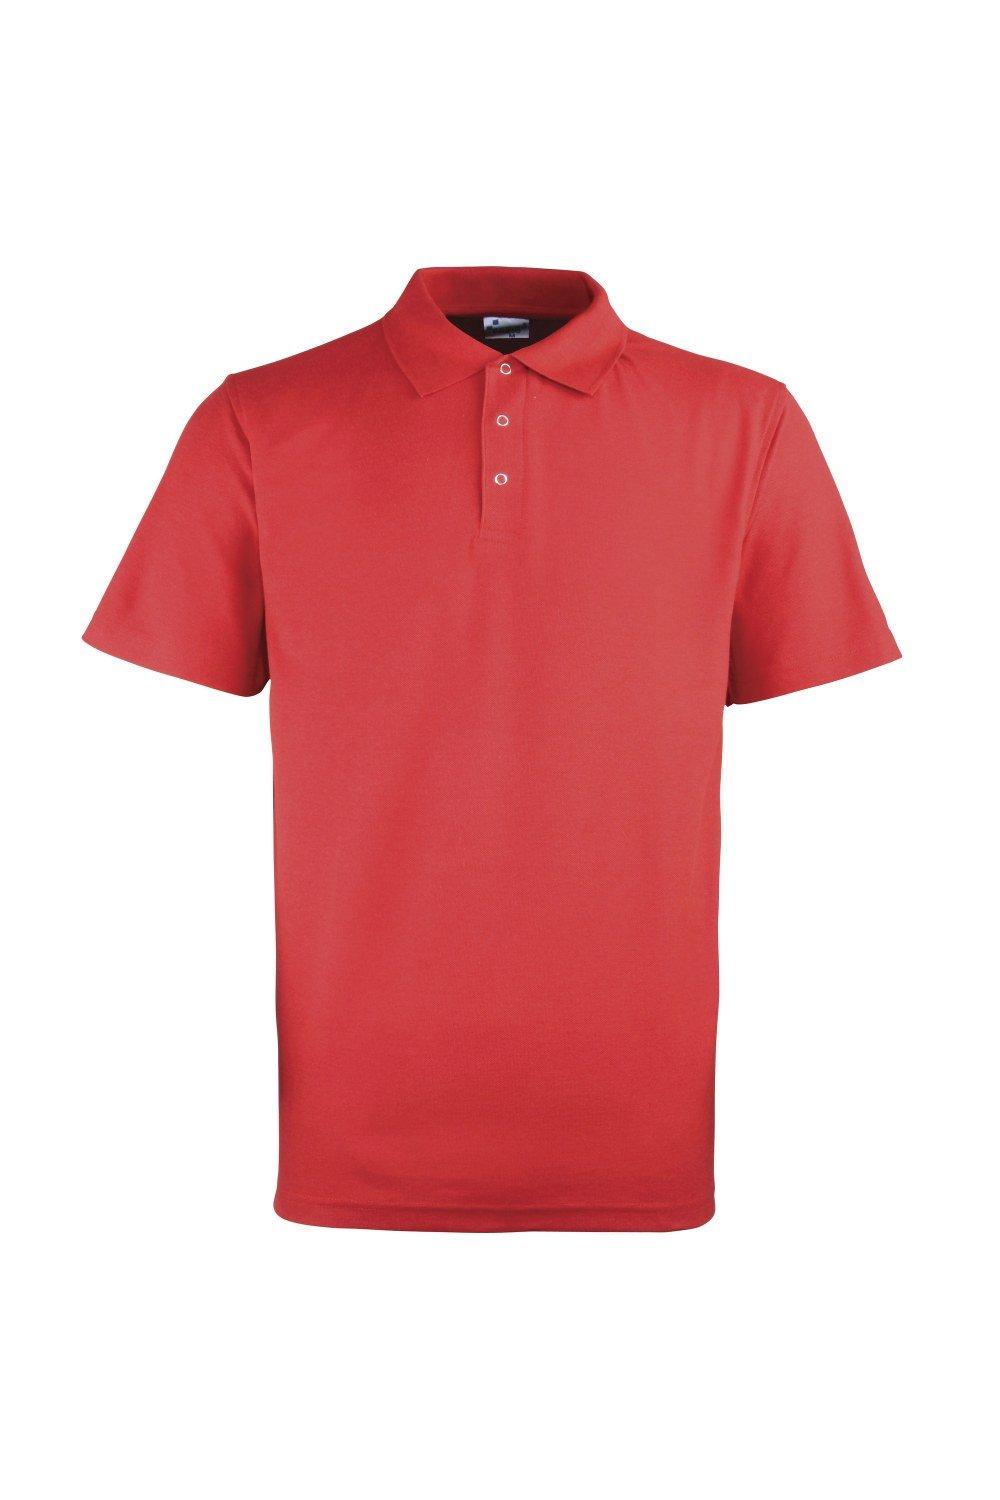 Однотонная рубашка-поло из тяжелого пике с заклепками Premier, красный рубашка sol s размер 3xl голубой